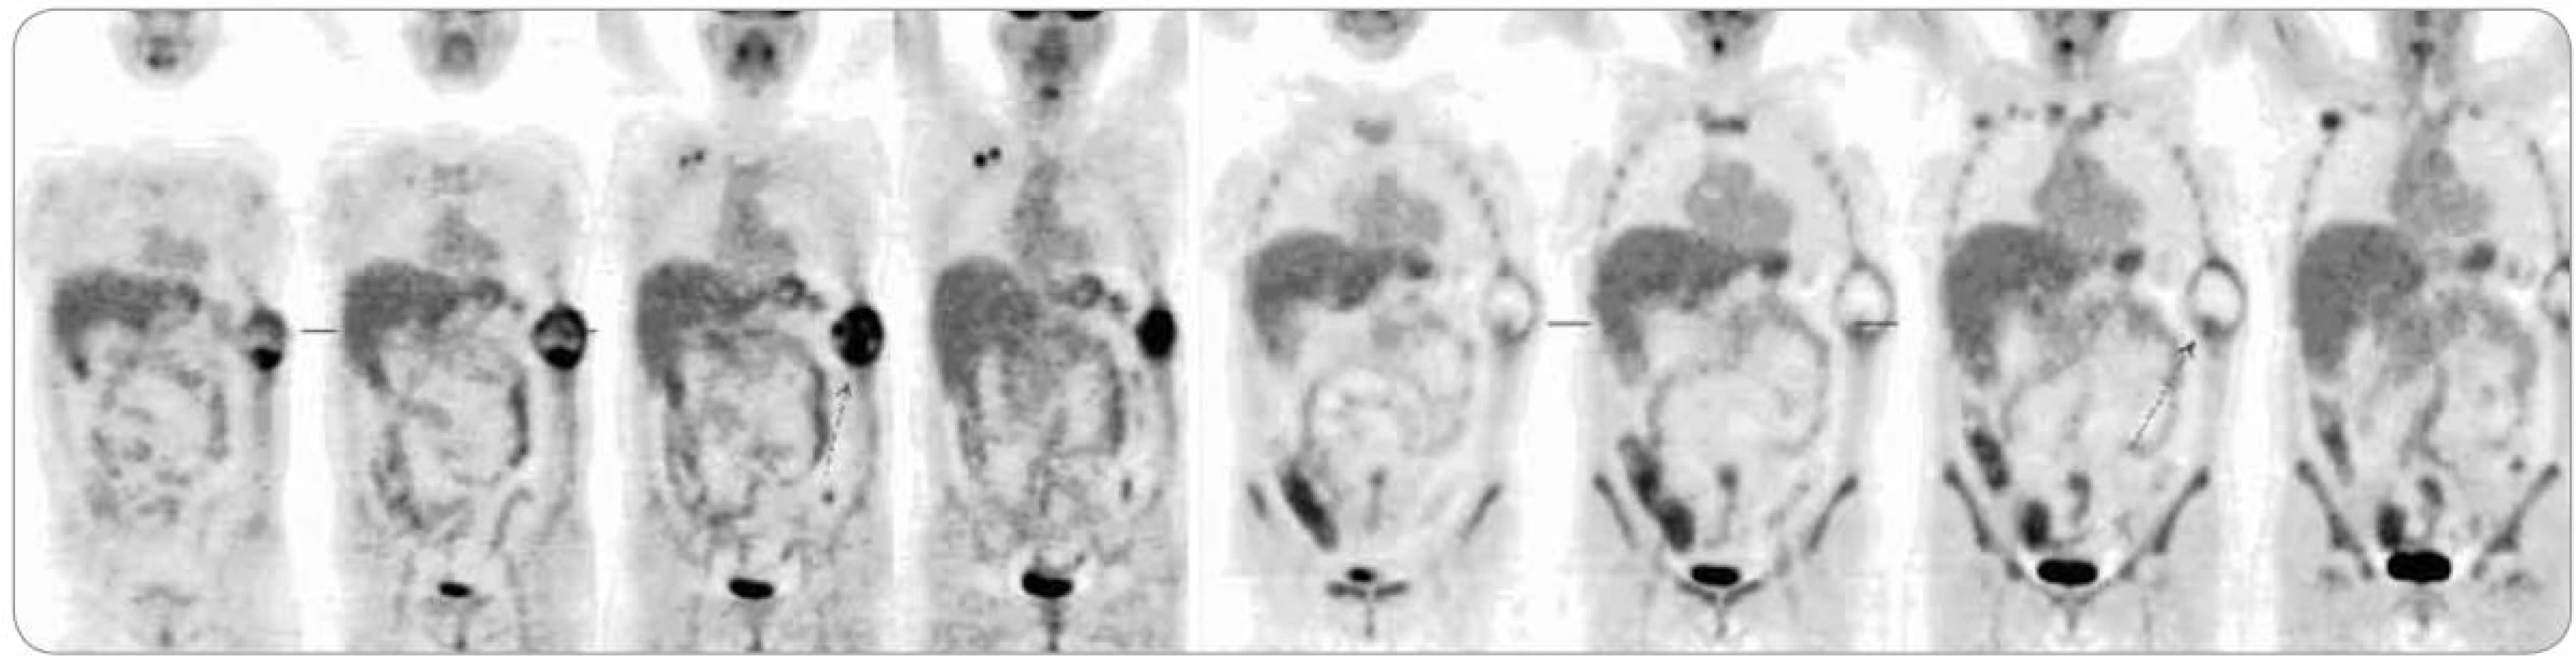 Srovnání PET vyšetření z ledna 2012 před zahájením léčby (vlevo) s vyšetřením z dubna 2012 po třech cyklech neoadjuvantní chemoterapie (vpravo). Je znatelný pokles aktivity tumoru hrudní stěny i pravostranné axilární lymfadenopatie.